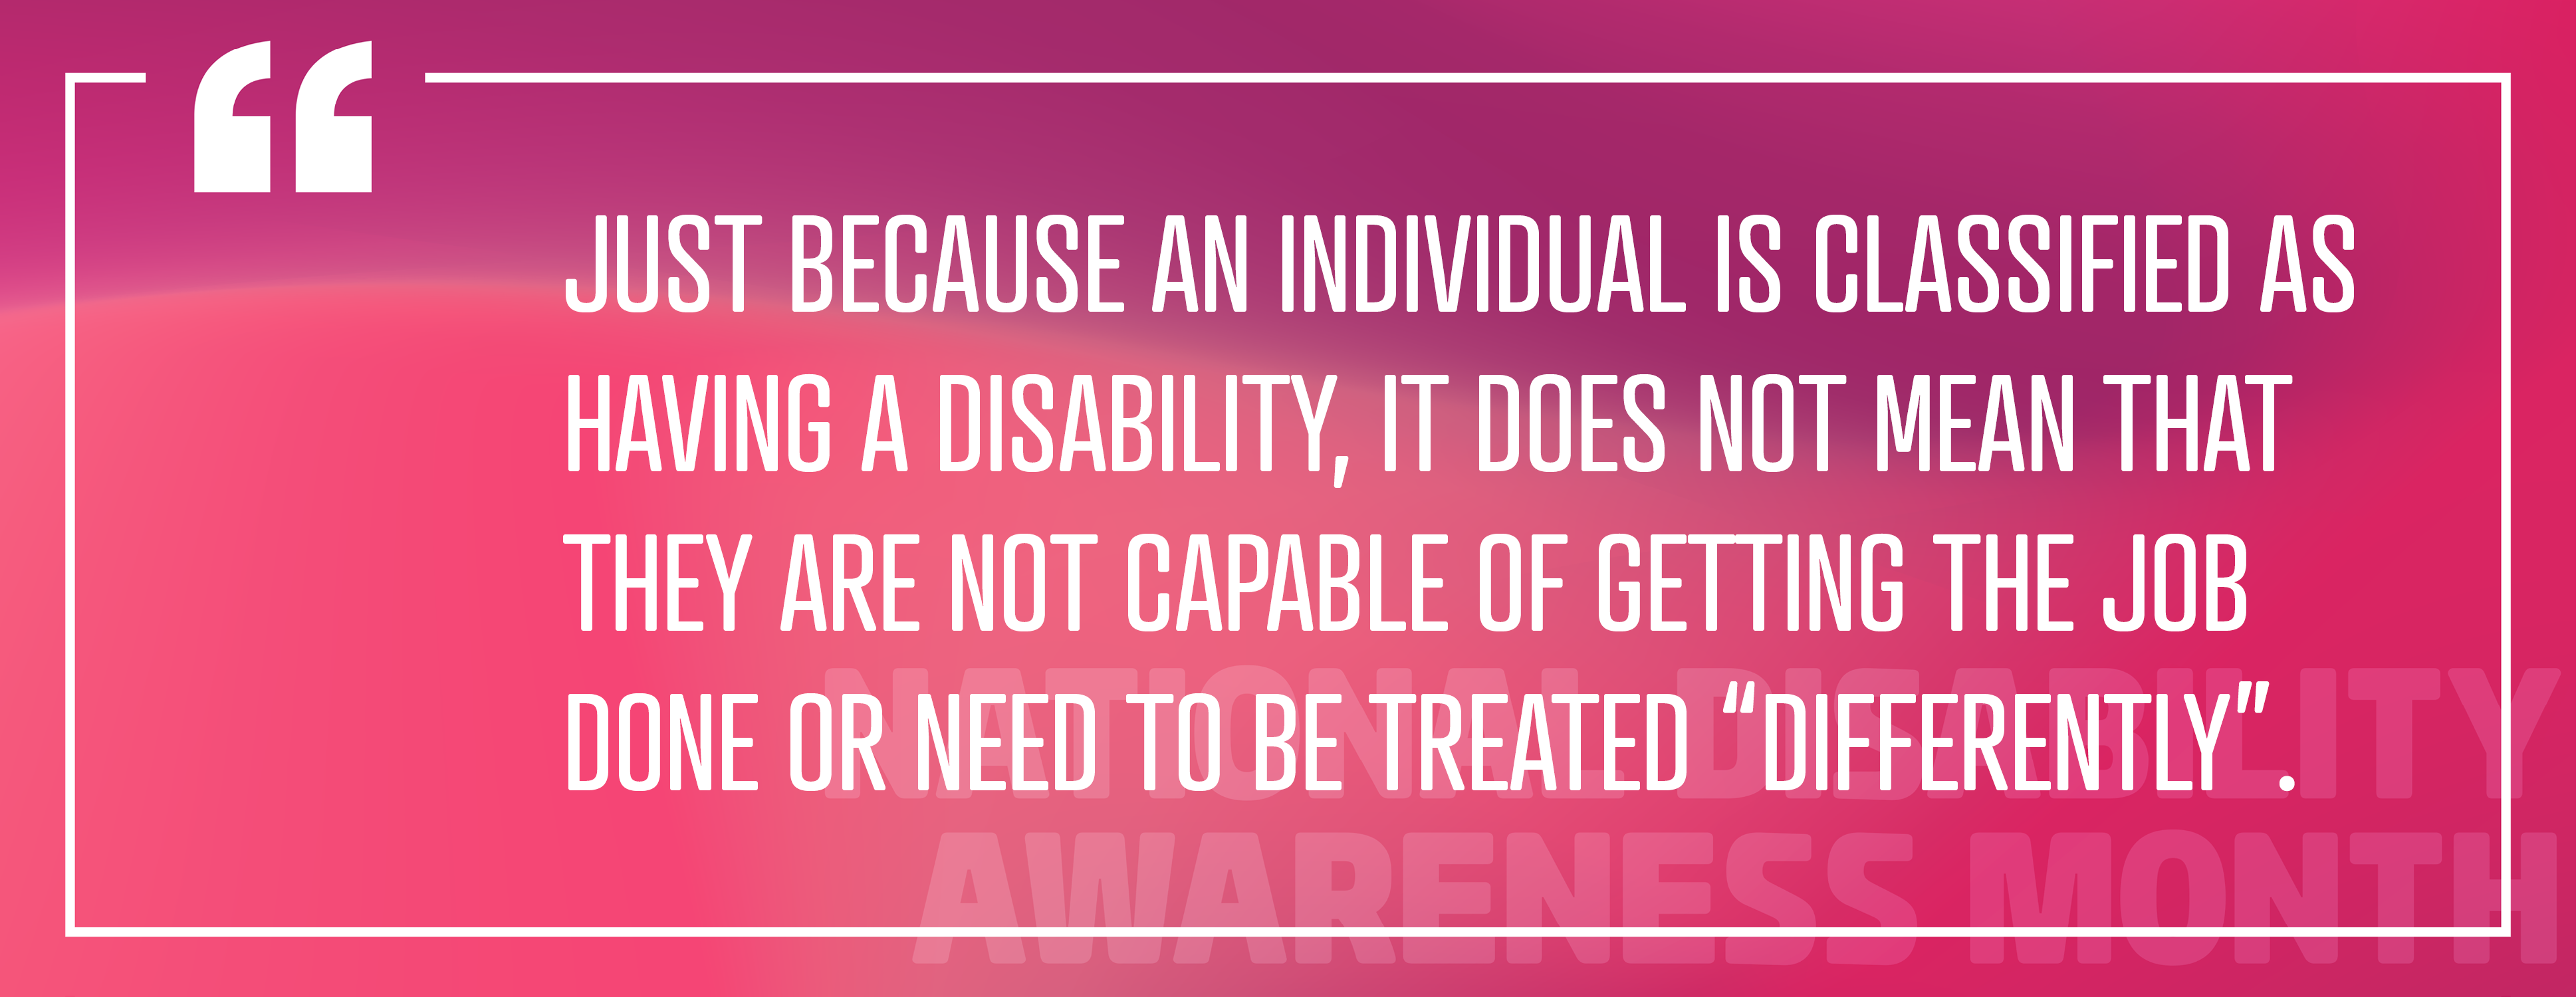 Afbeelding 4: "Het feit dat iemand een handicap heeft, betekent niet dat hij/zij niet in staat is om de klus te klaren of dat hij/zij "anders" behandeld moet worden."